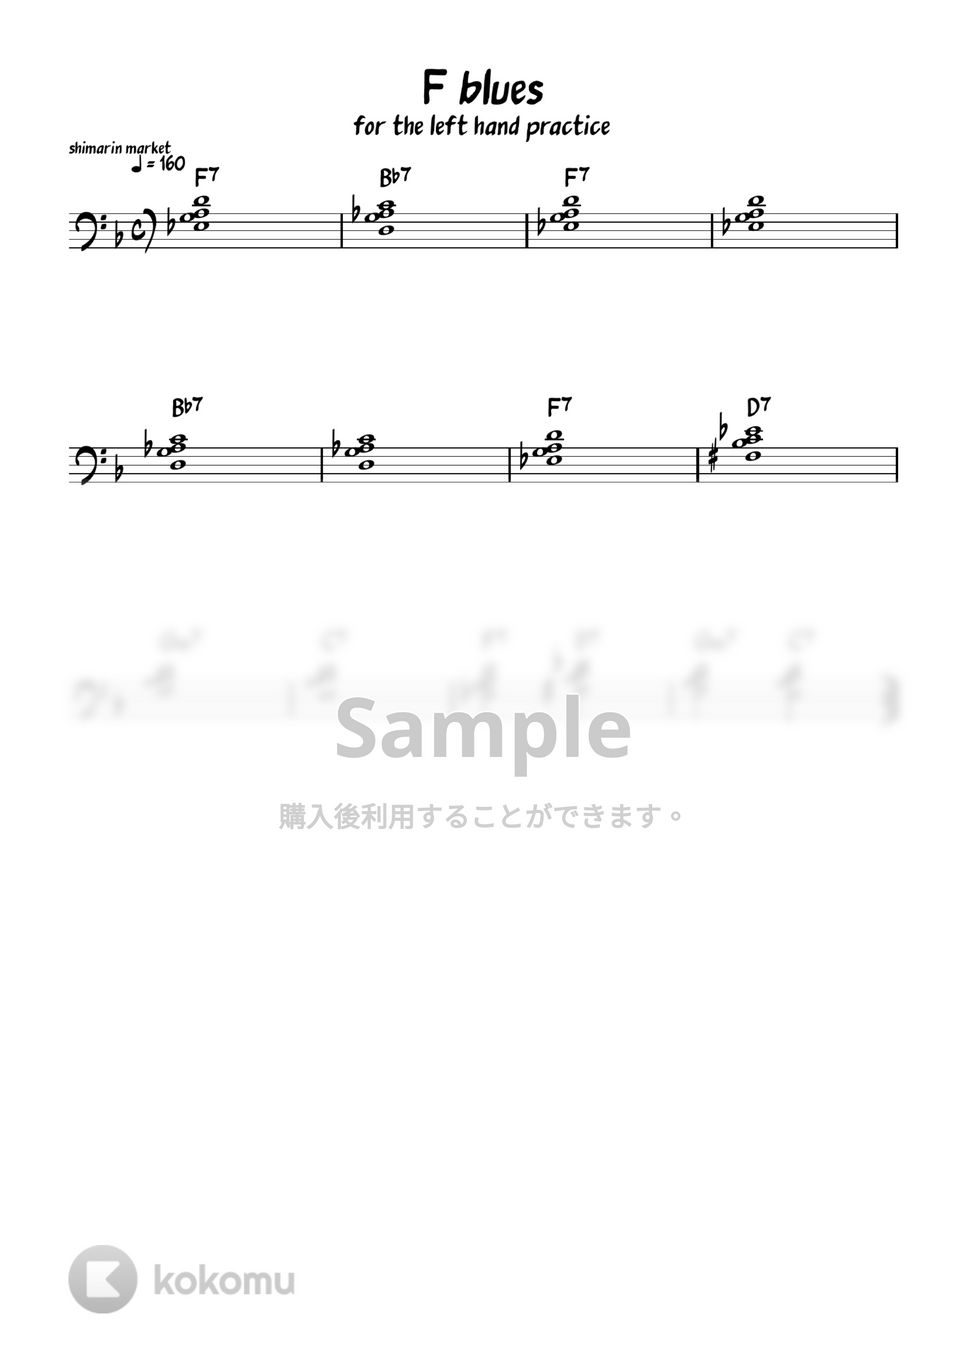 左手のコードの押さえ方 - F BLUES (for the left hand practice) by shimarin market